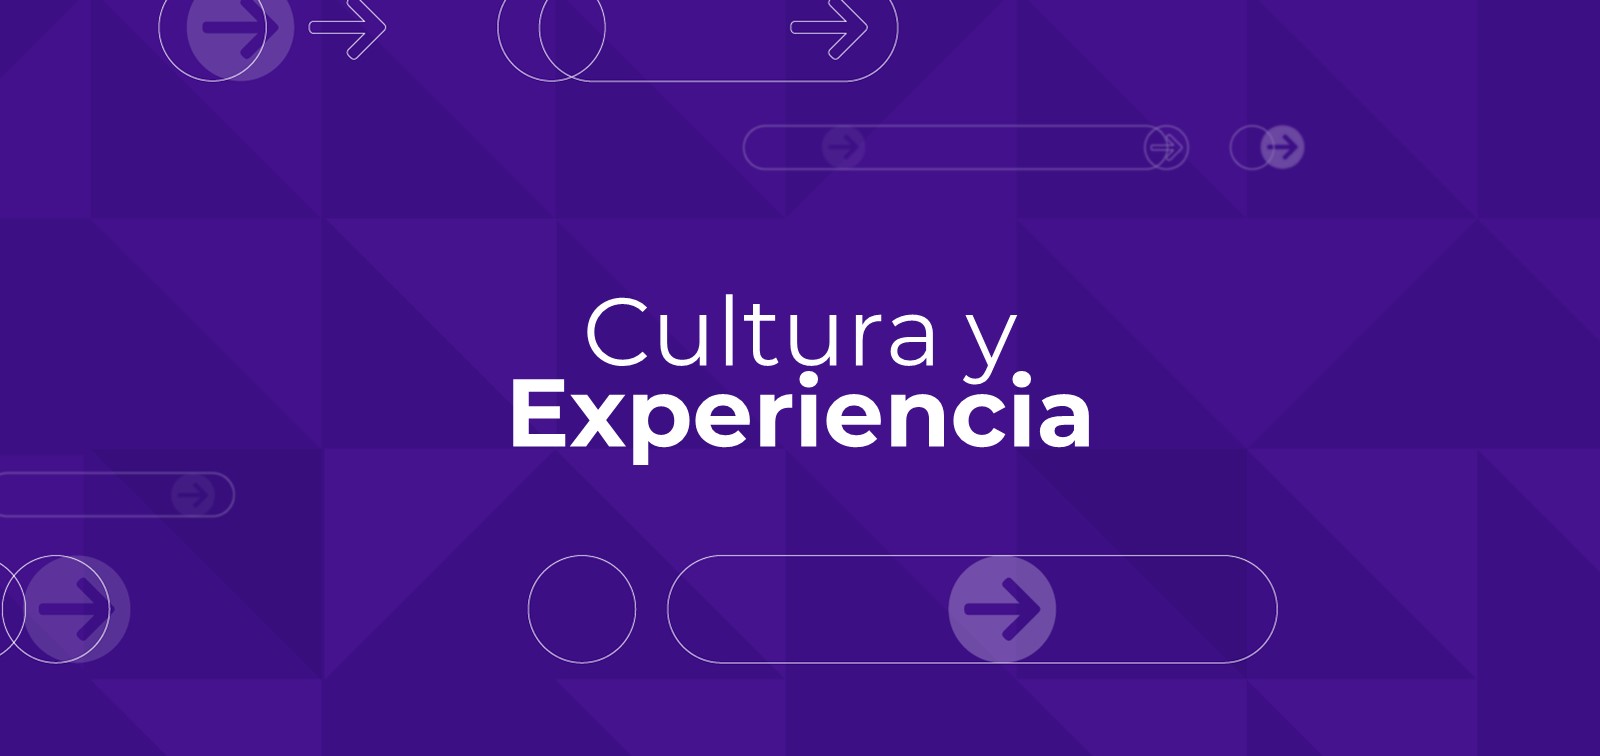 Cultura y Experiencia